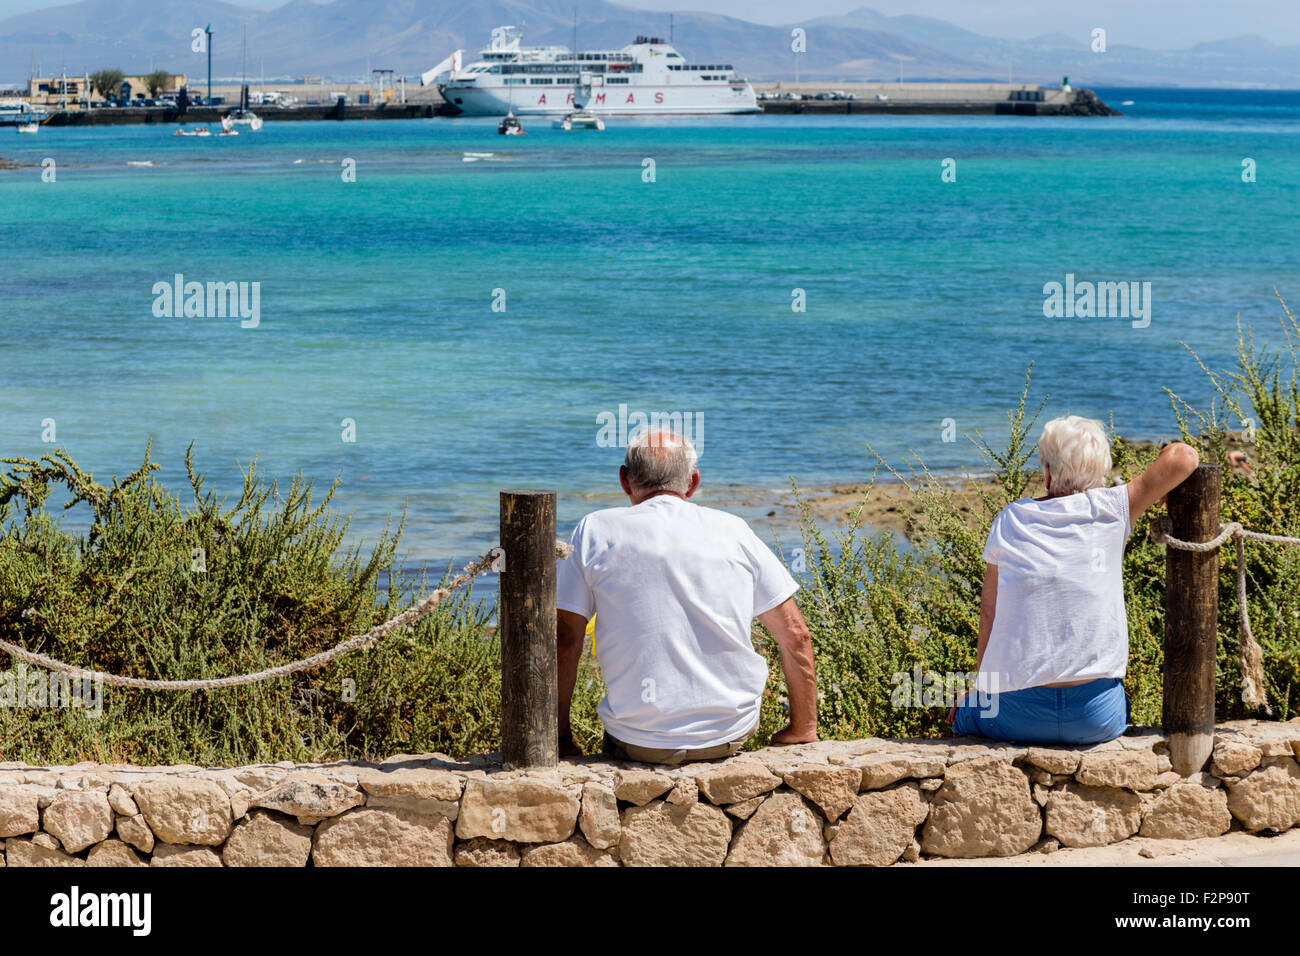 Zwei ältere Leute Blick auf das Meer bei großen Schiff. Correlejo, Fuerteventura Kanaren Spanien Stockfoto